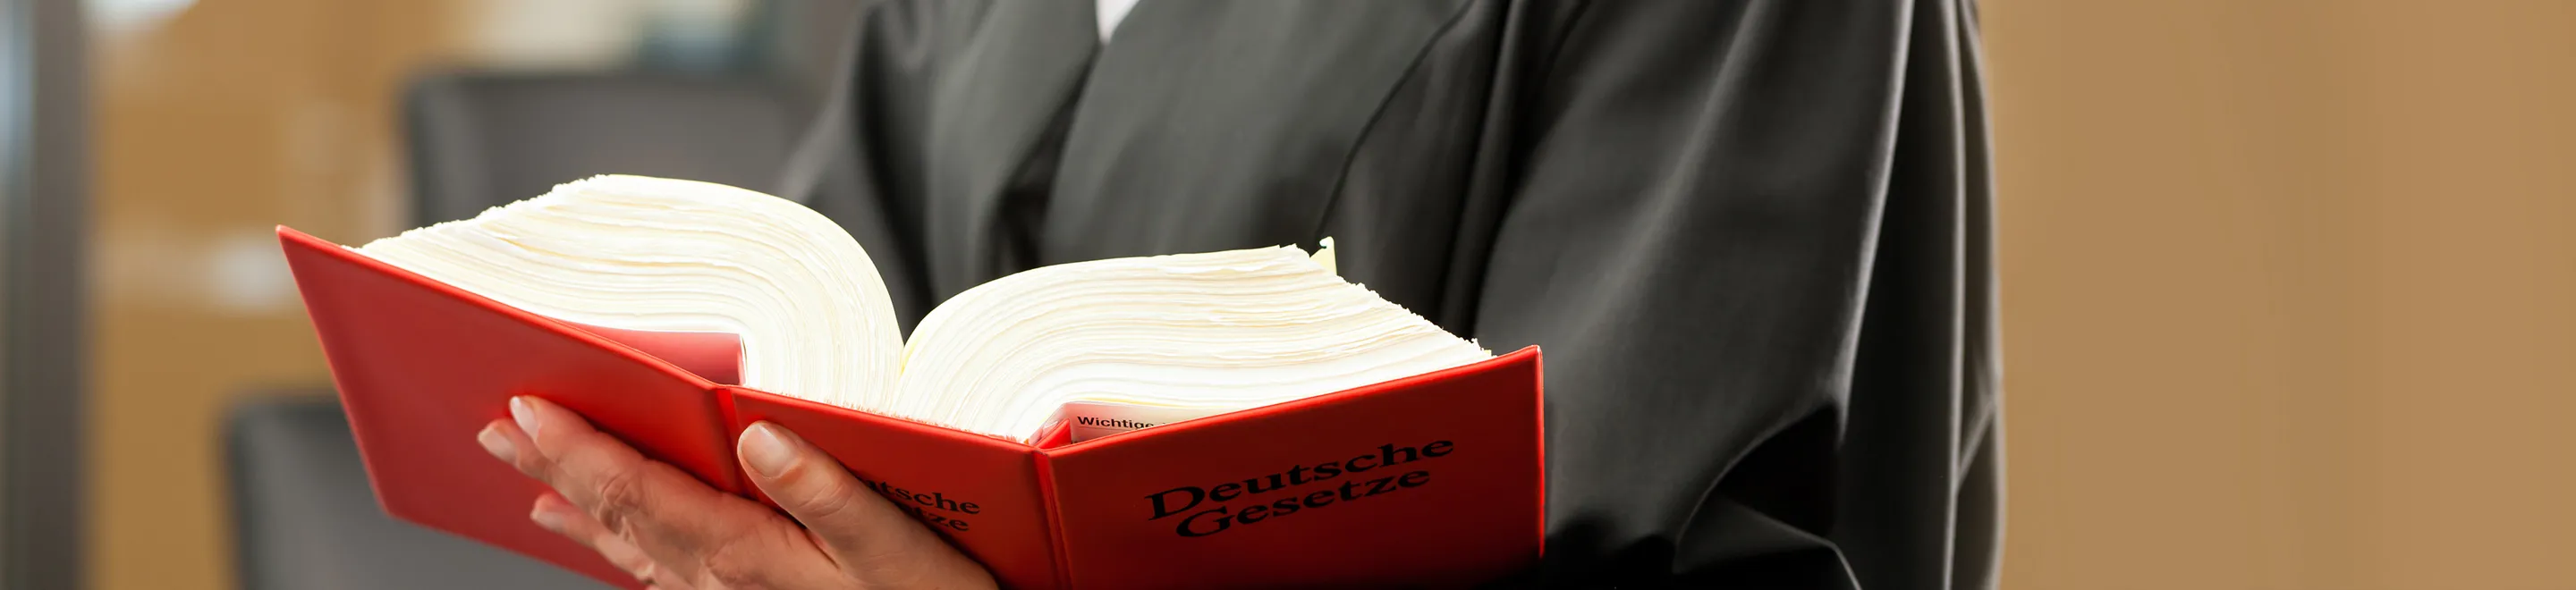 Hände, die ein dickes Buch mit der Aufschrift "Deutsches Gesetz" tragen.